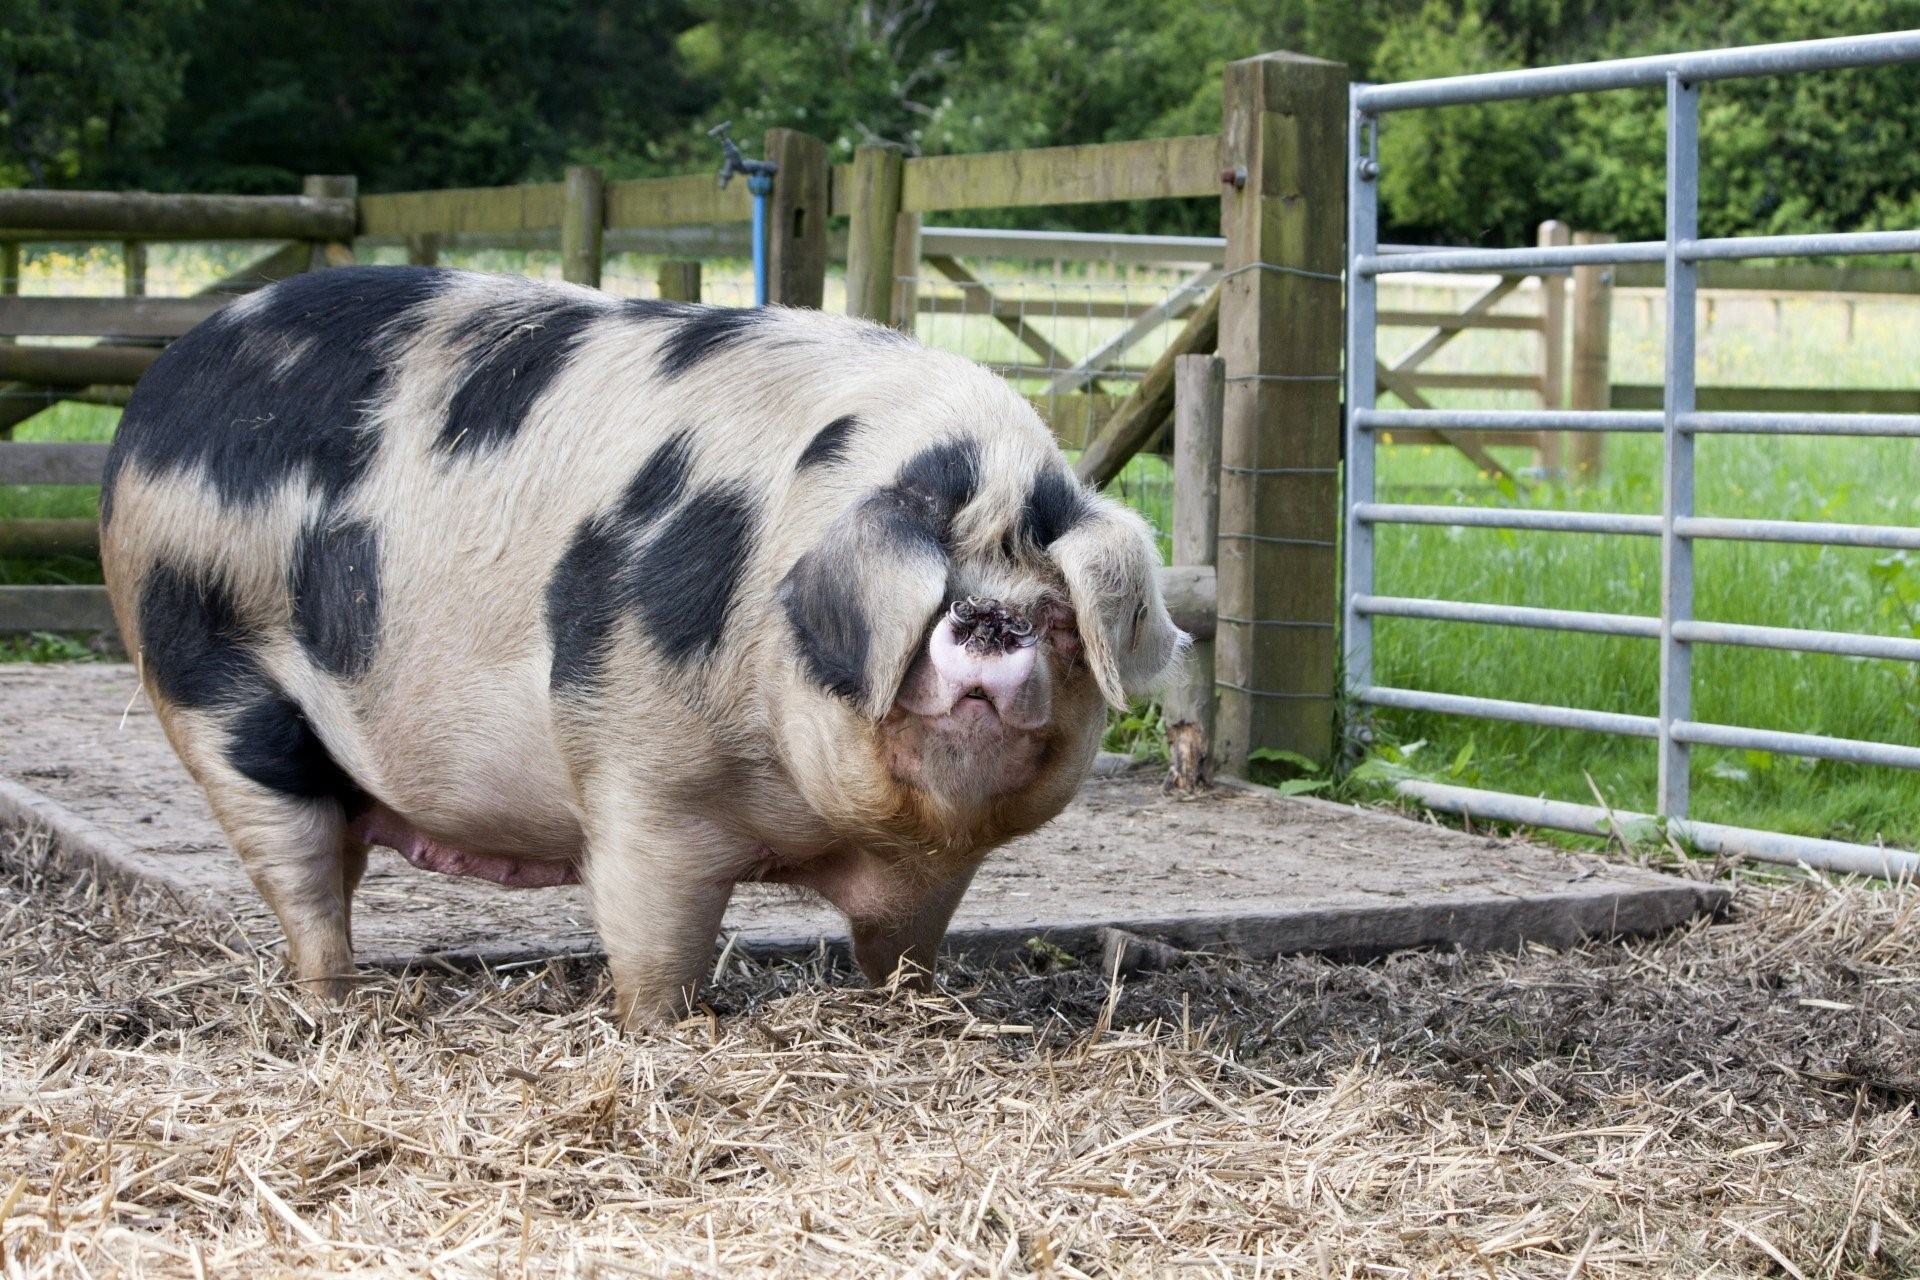 Фотография жирной свиньи